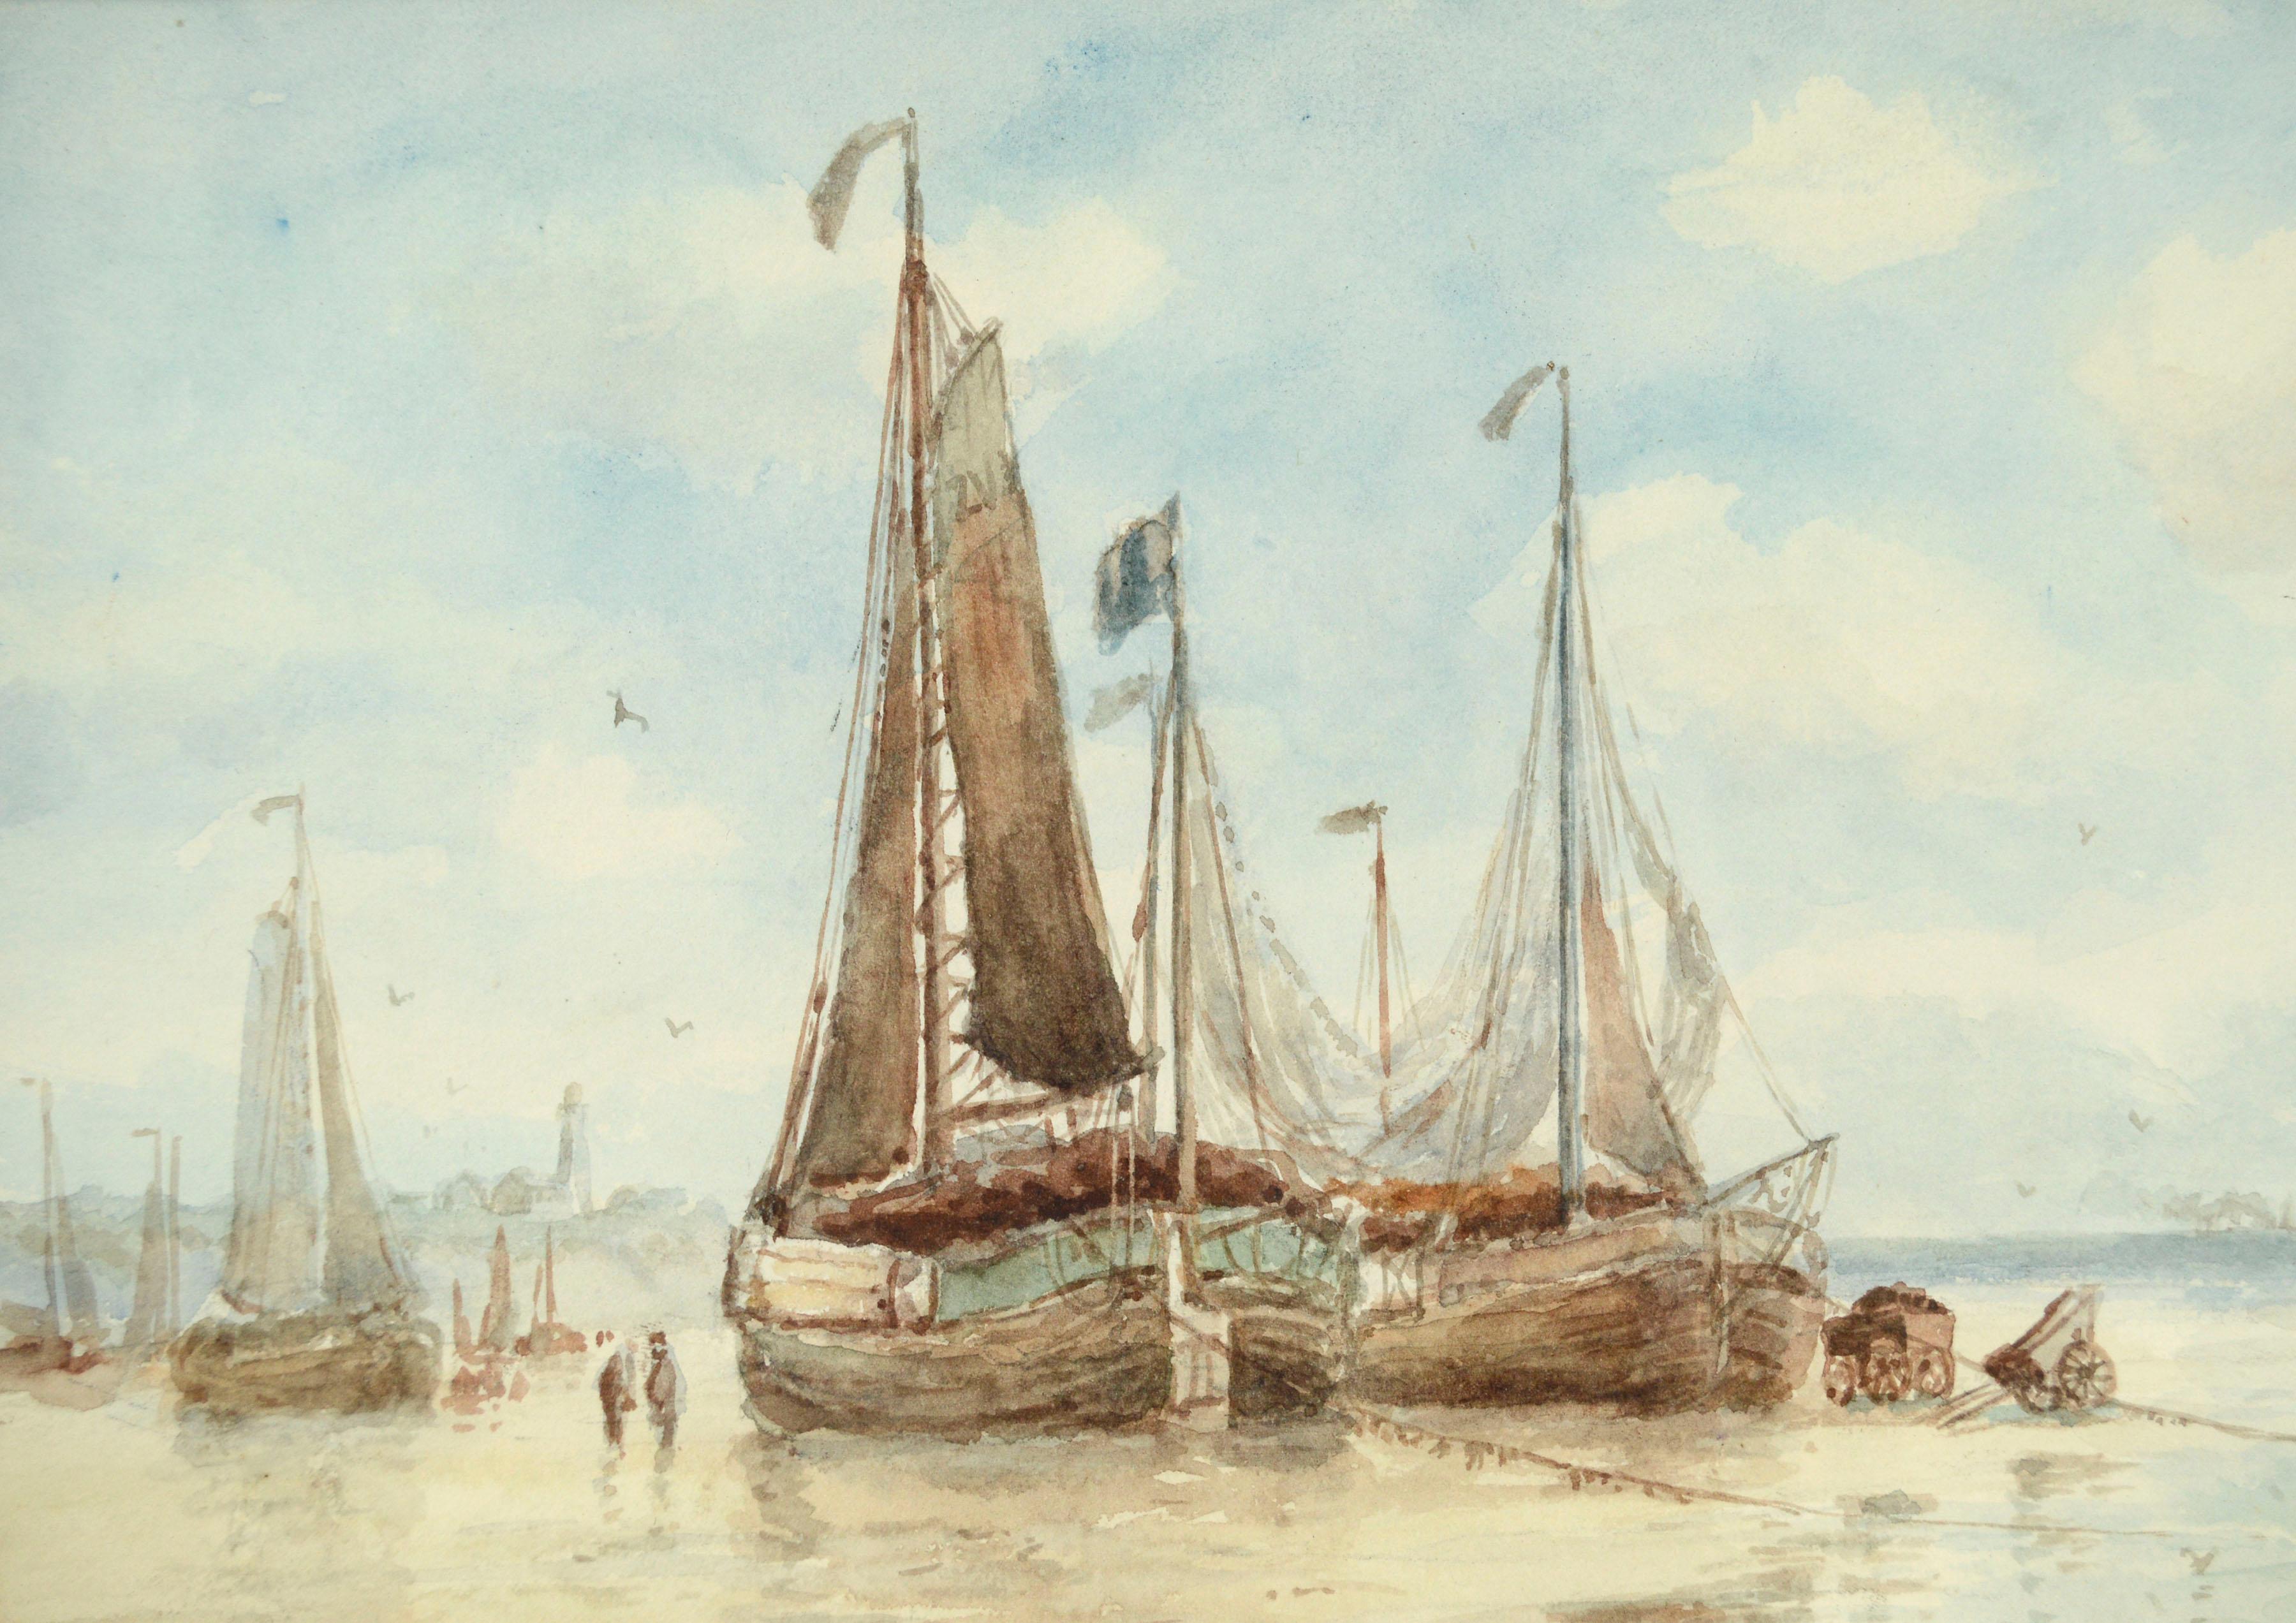 Segelboote im Hafen, figuratives Landschaftsaquarell des frühen 20. Jahrhunderts (Amerikanischer Impressionismus), Art, von Frederick Leo Hunter